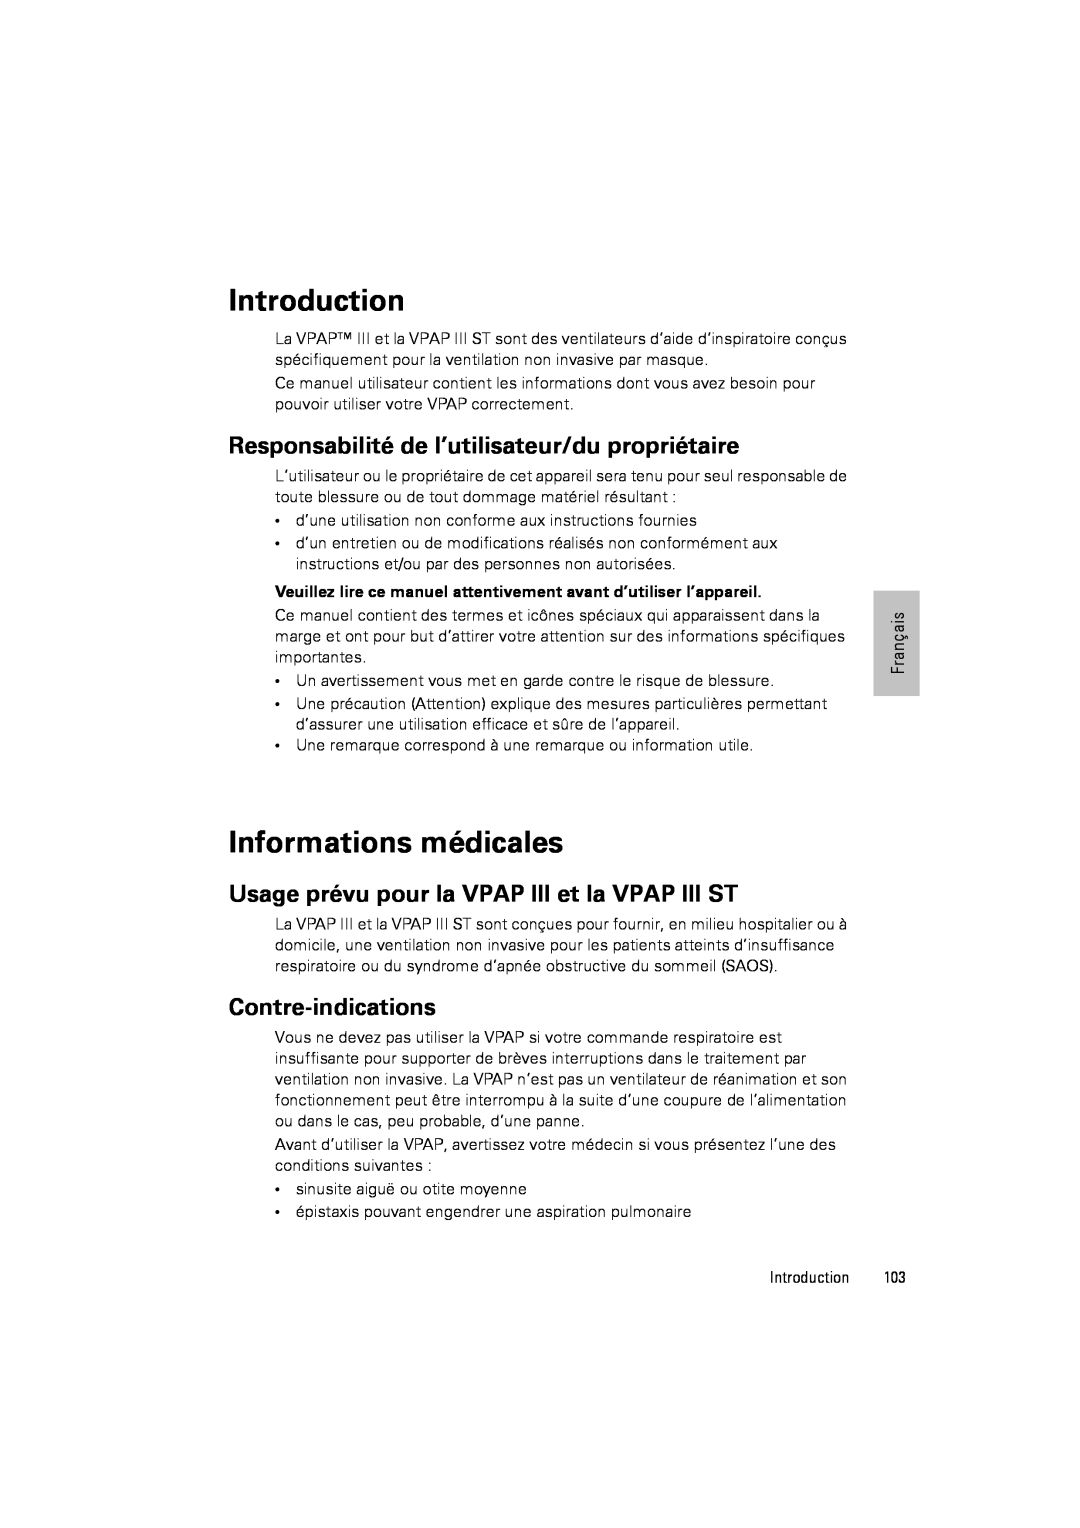 ResMed III & III ST user manual Informations médicales, Introduction, Responsabilité de l’utilisateur/du propriétaire 